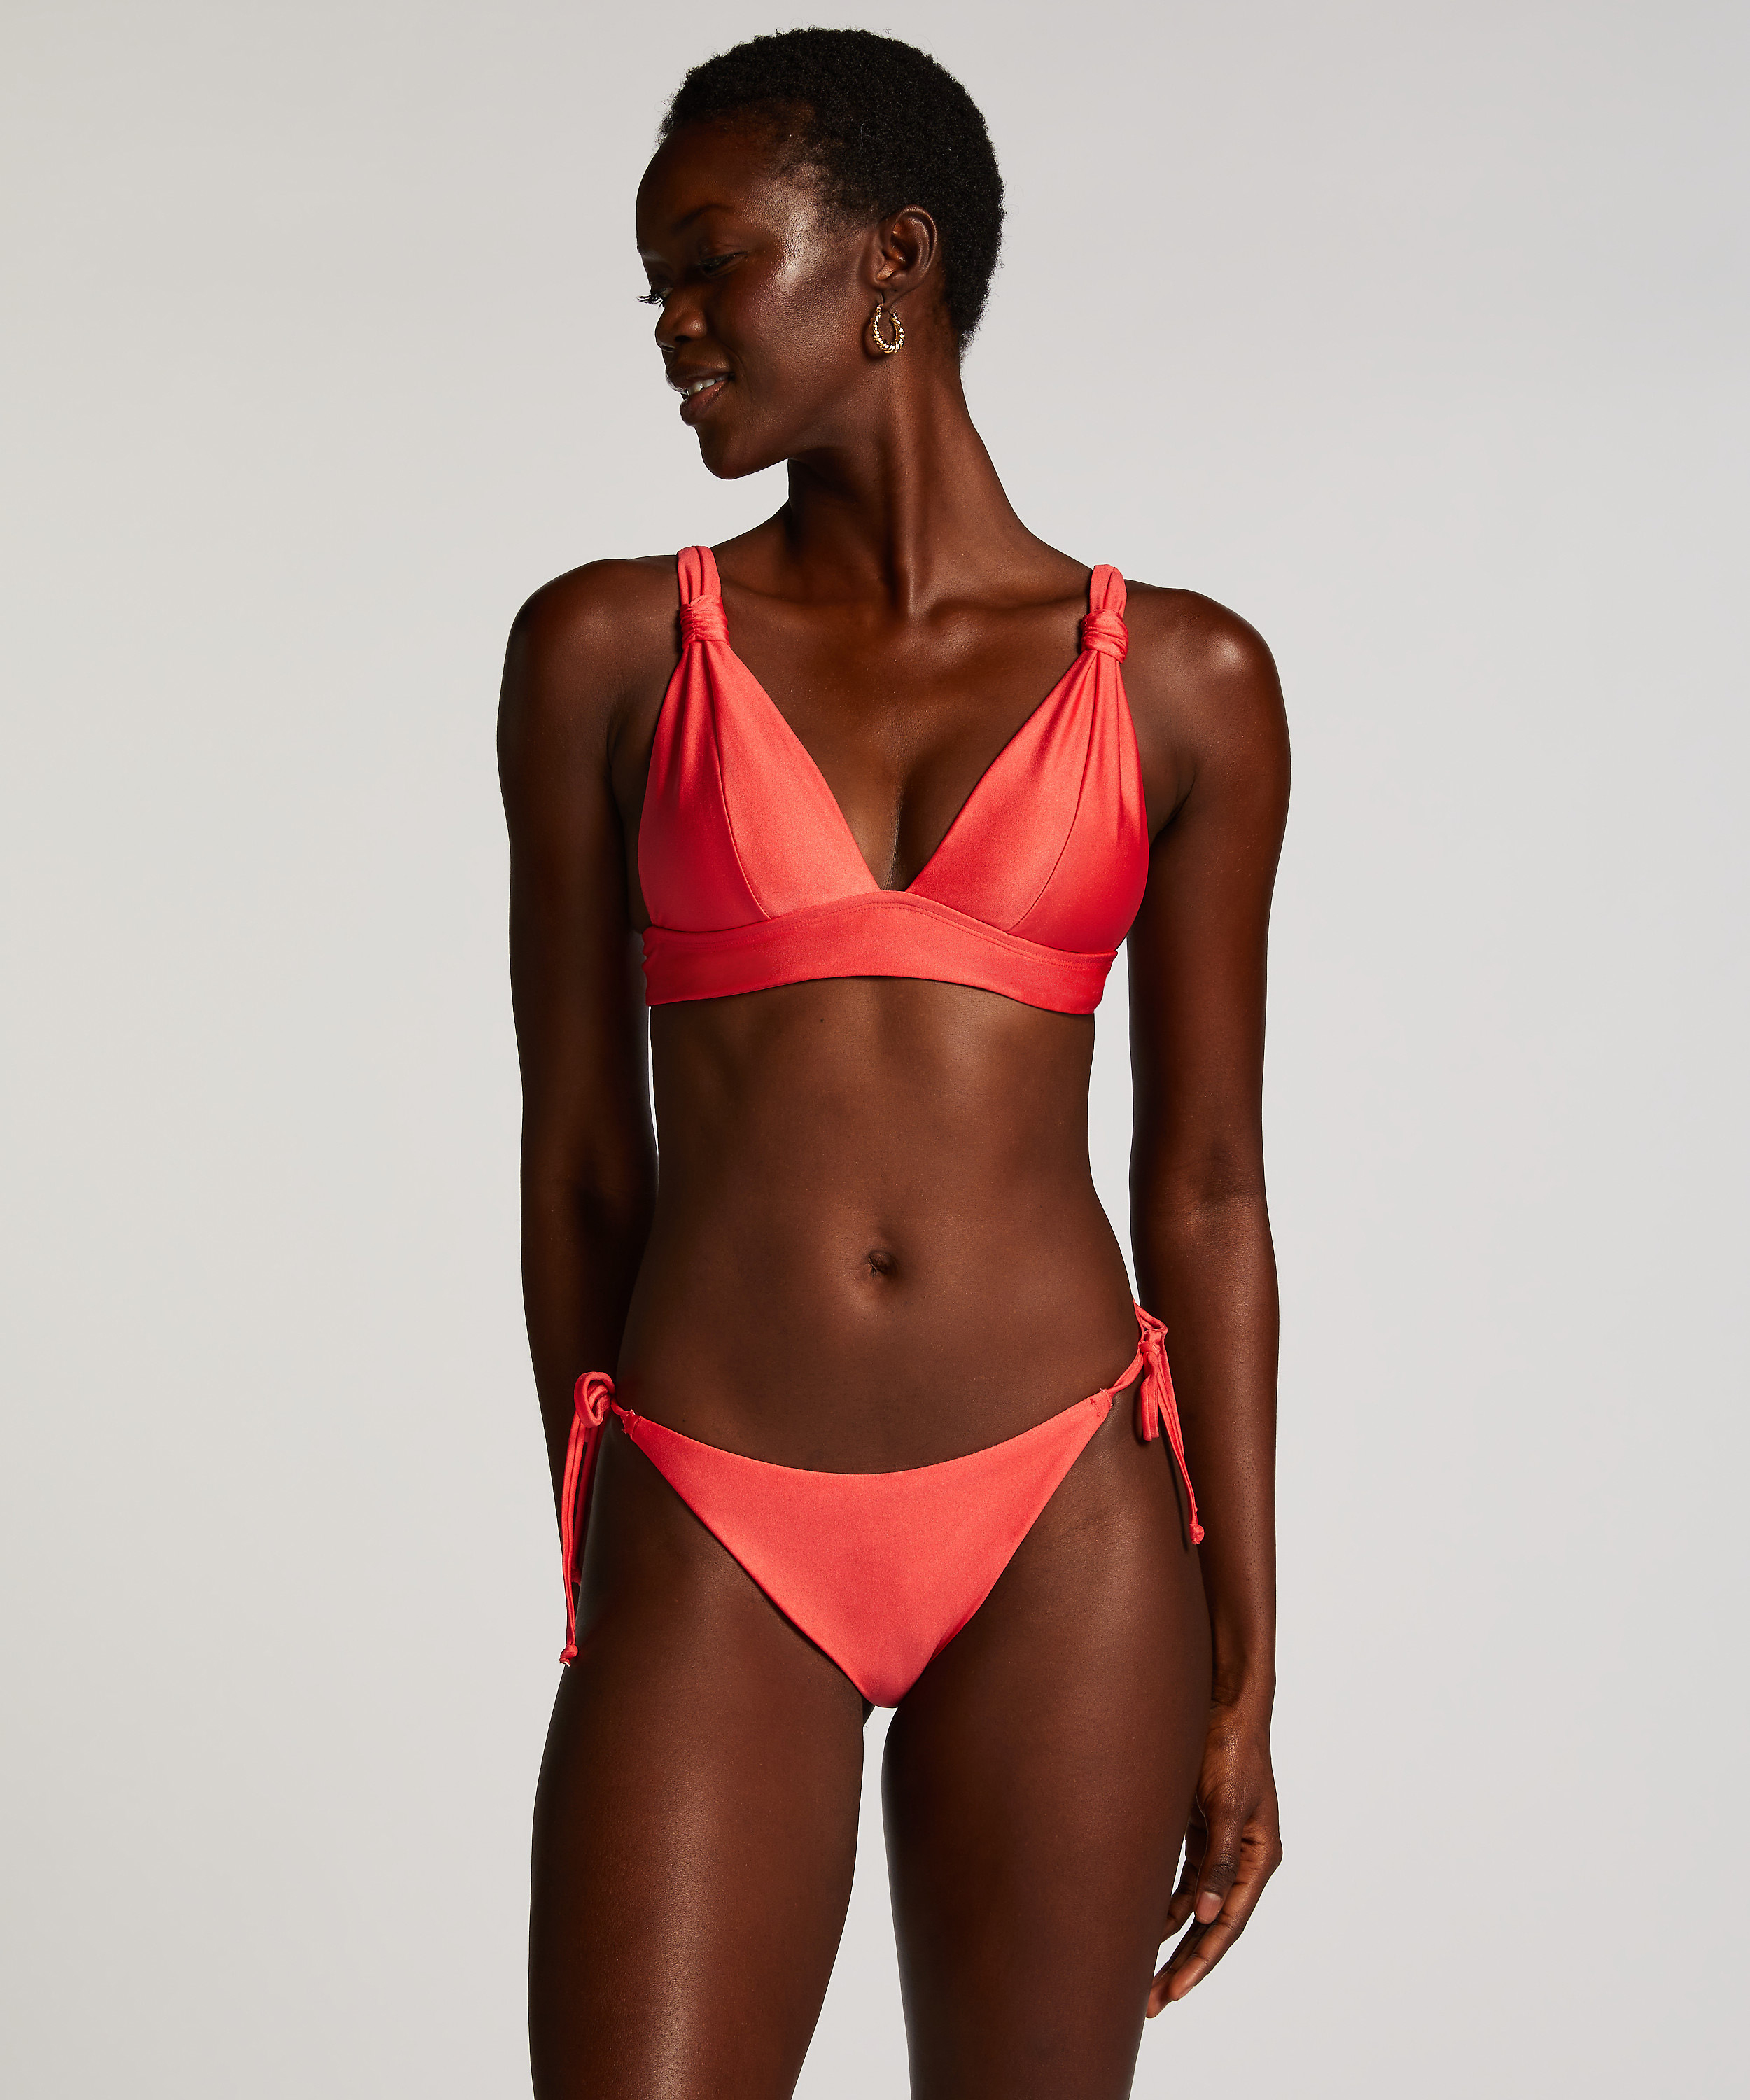 Triangel-Bikini-Top Luxe, Rot, main